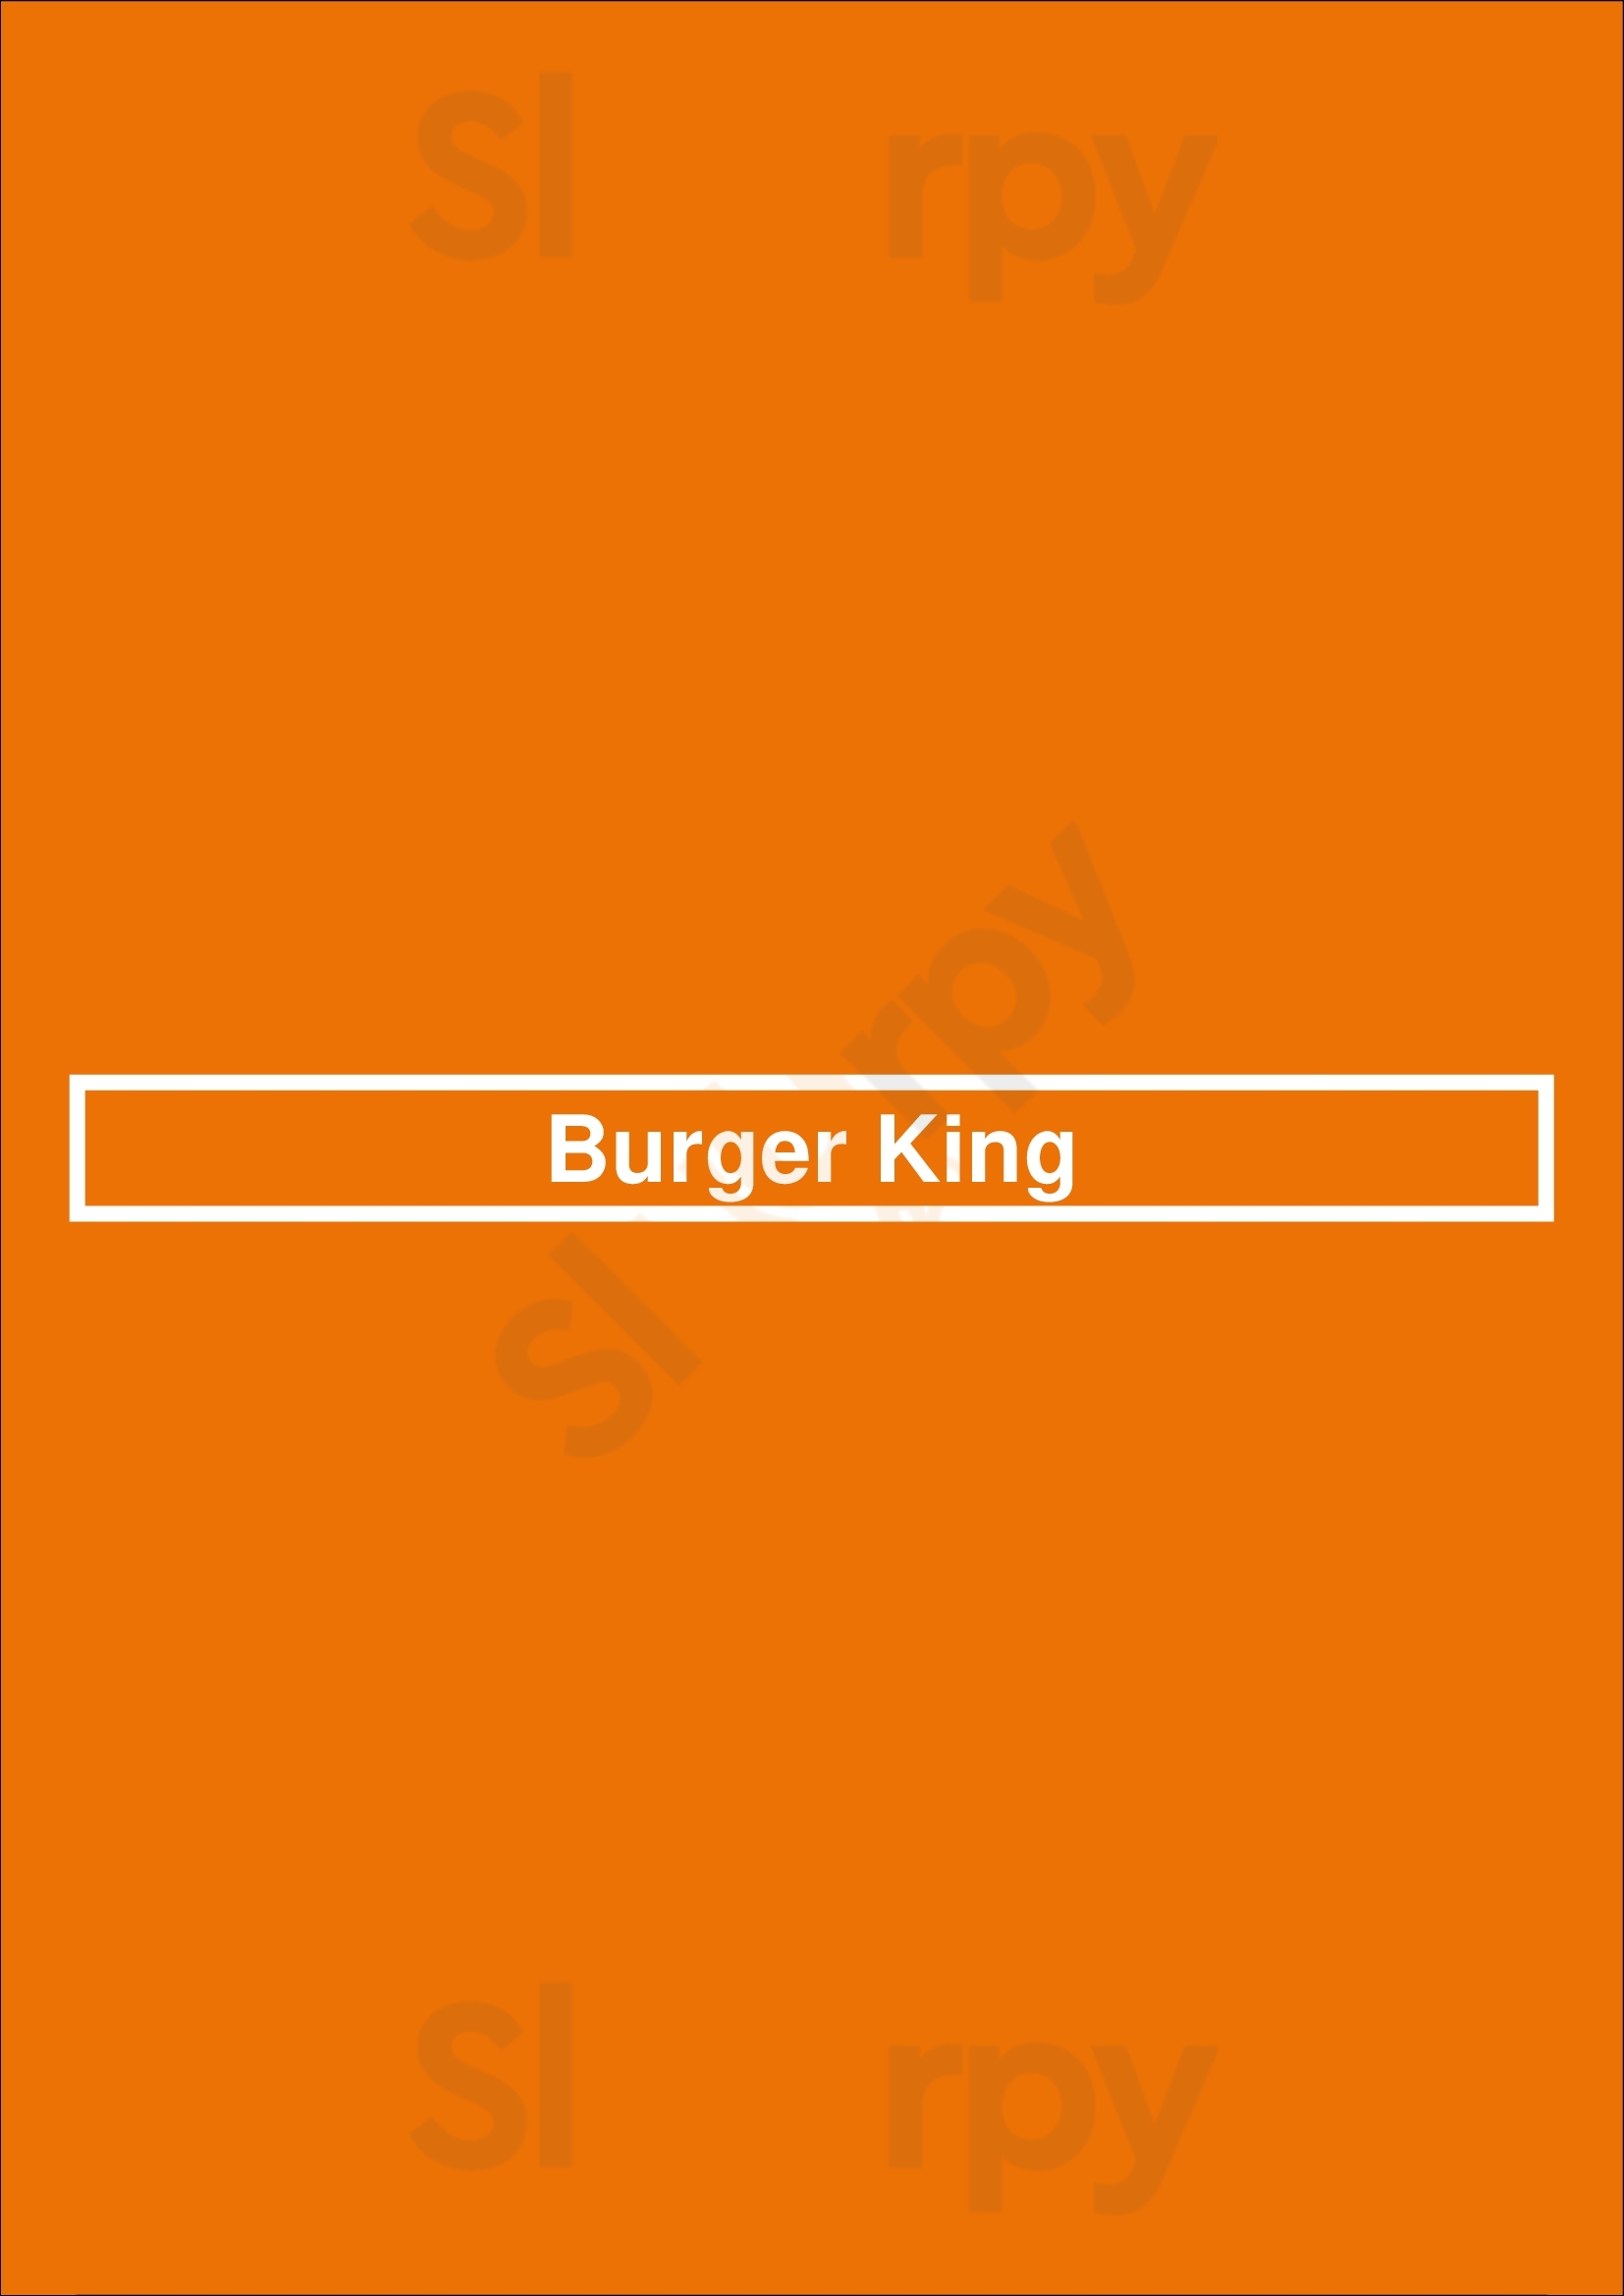 Burger King Raleigh Menu - 1